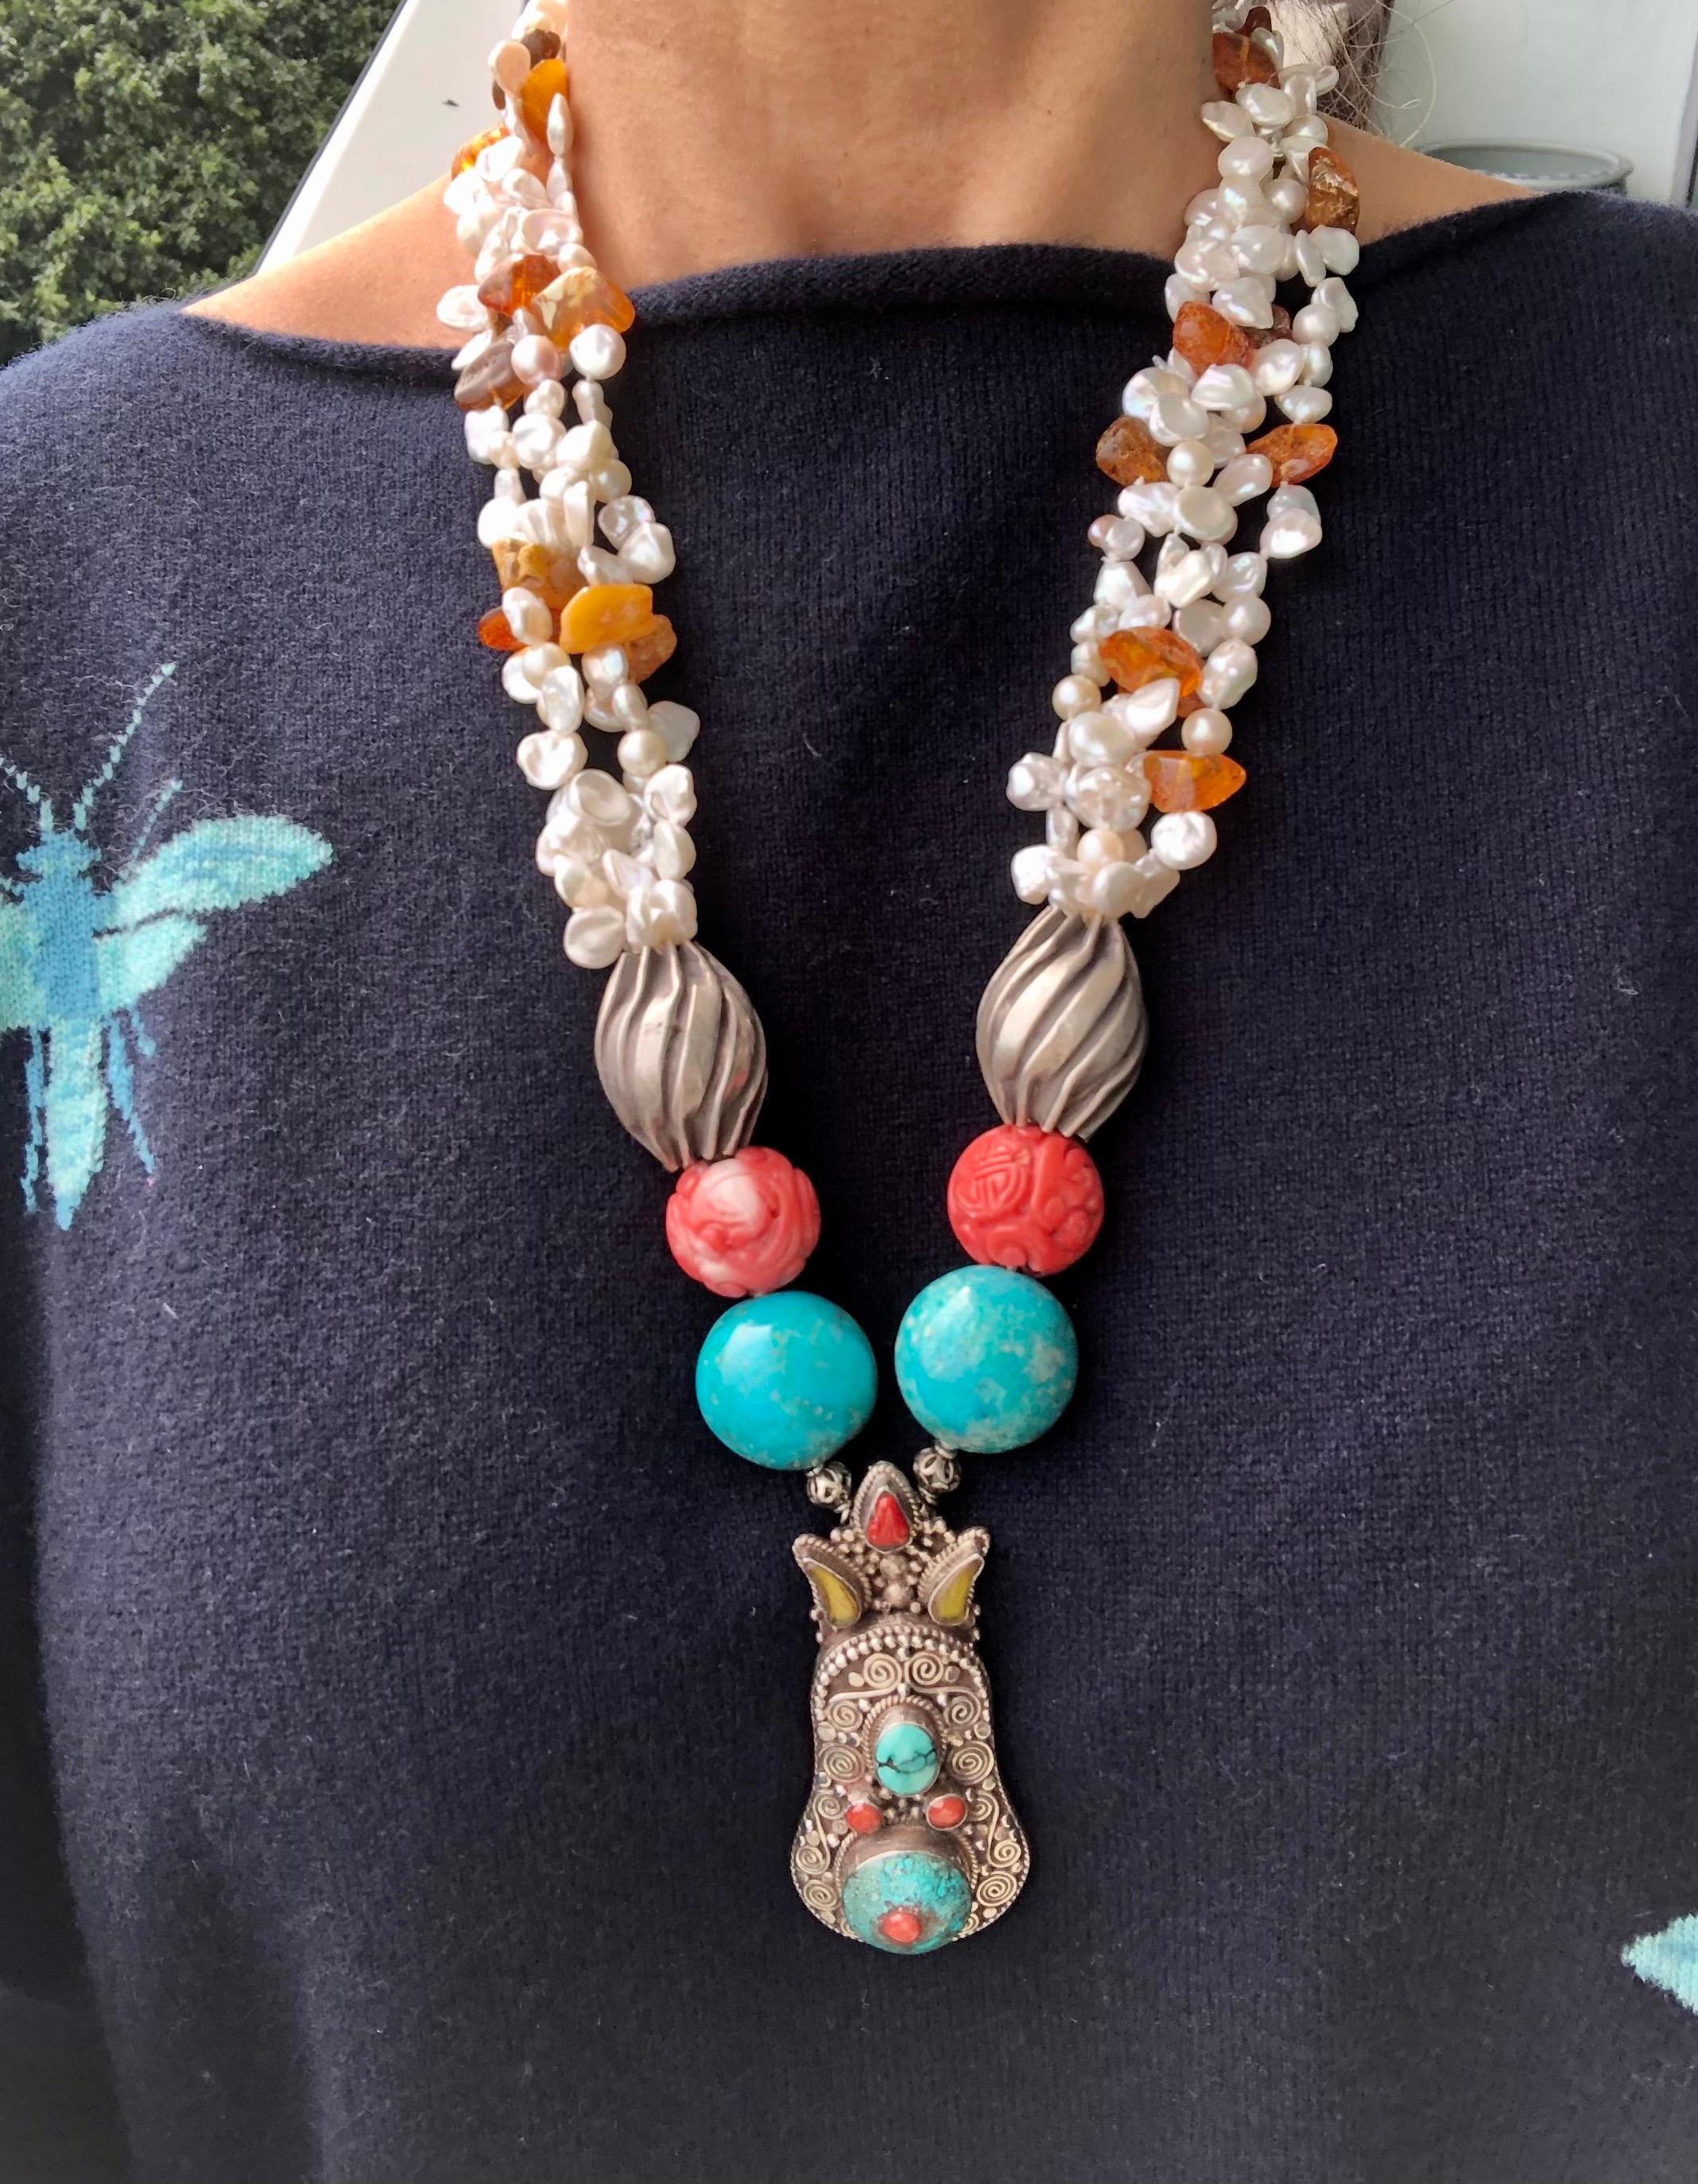 Einzigartig

Begeben Sie sich auf eine Reise um die Welt mit dieser atemberaubenden Halskette, die eine Reihe von exquisiten Elementen aus verschiedenen Ecken der Welt enthält.

Die Reise beginnt in Tibet, wo ein hübscher Silberanhänger mit